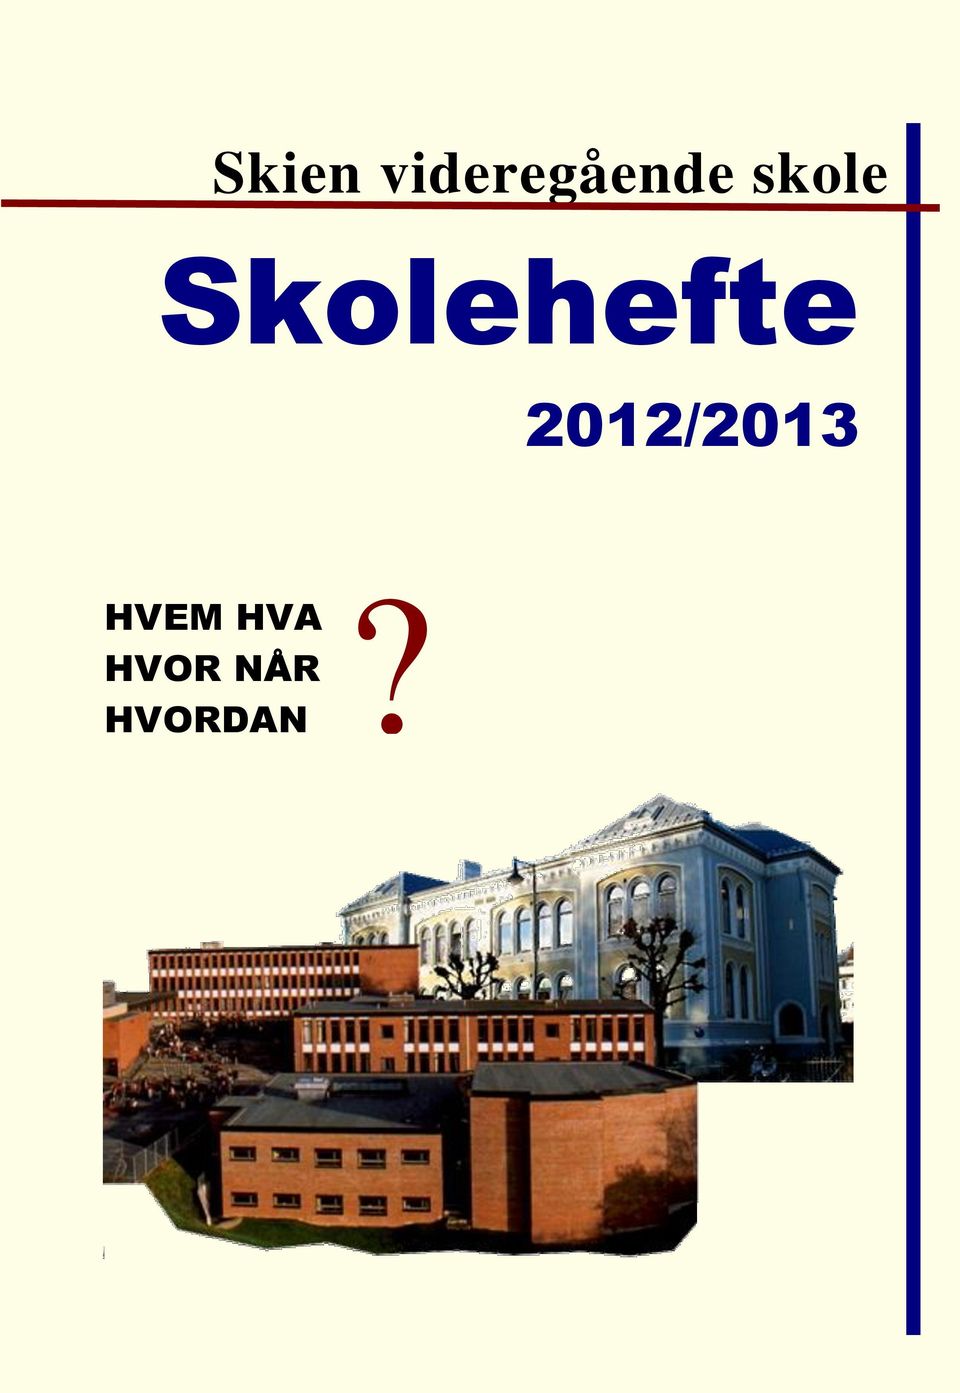 2012/2013 HVEM HVA